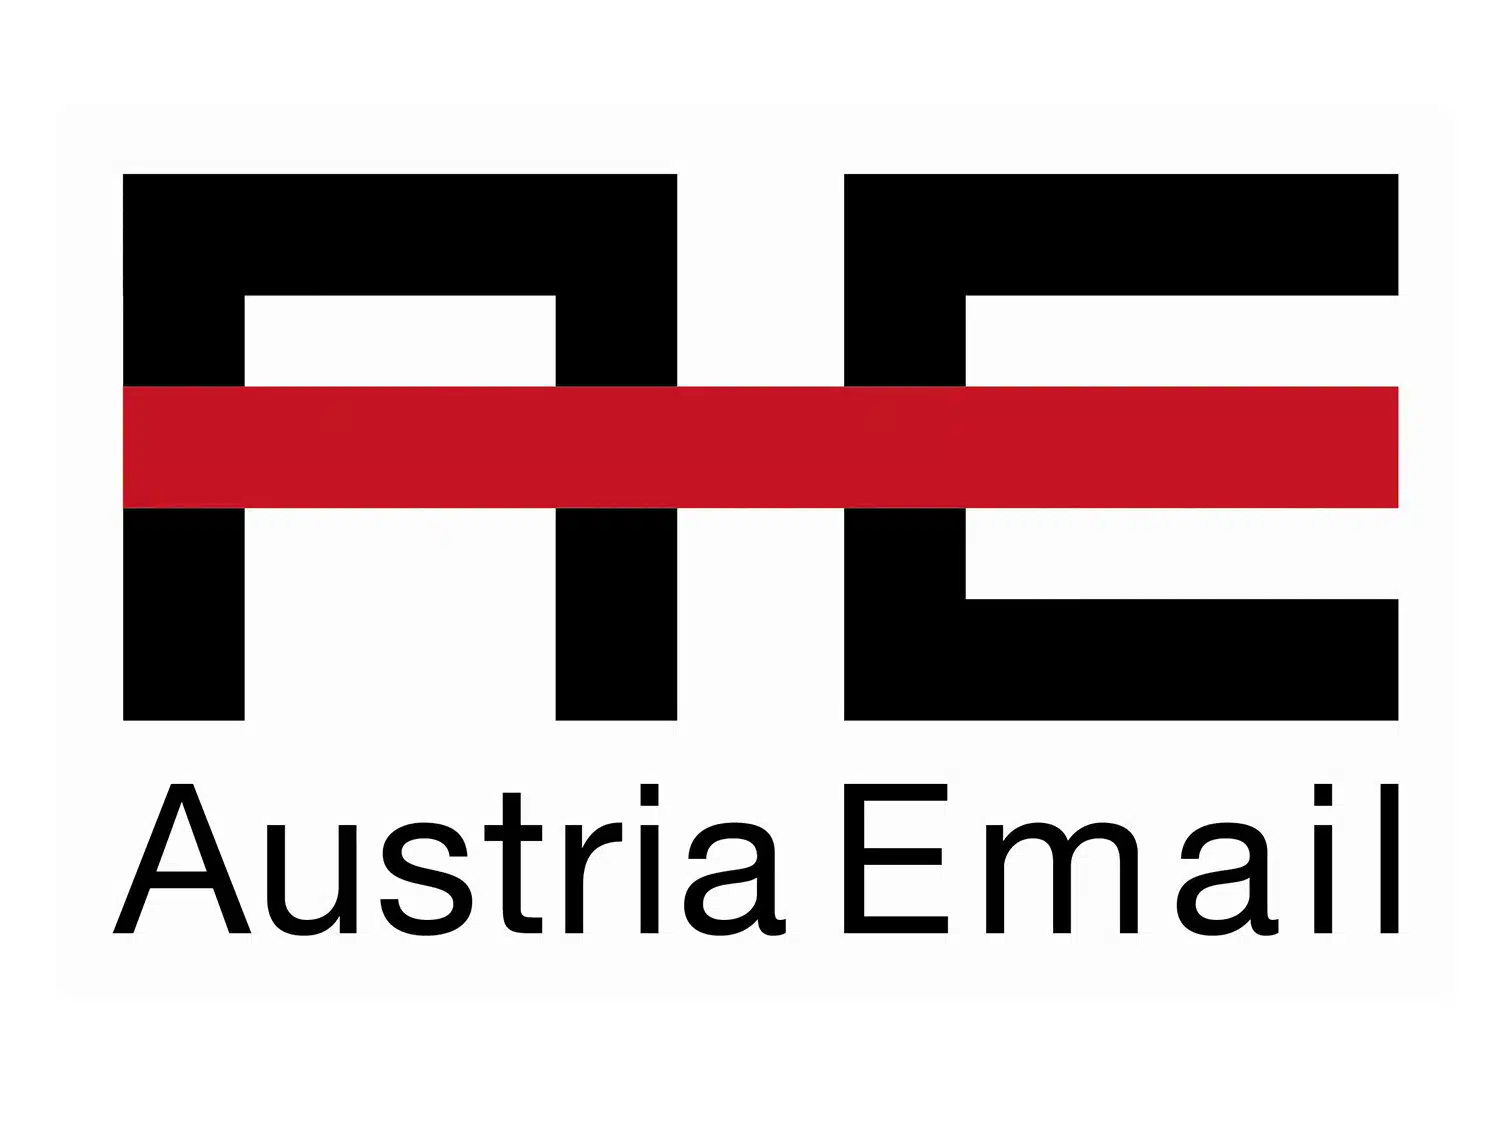 Austria Email Logo